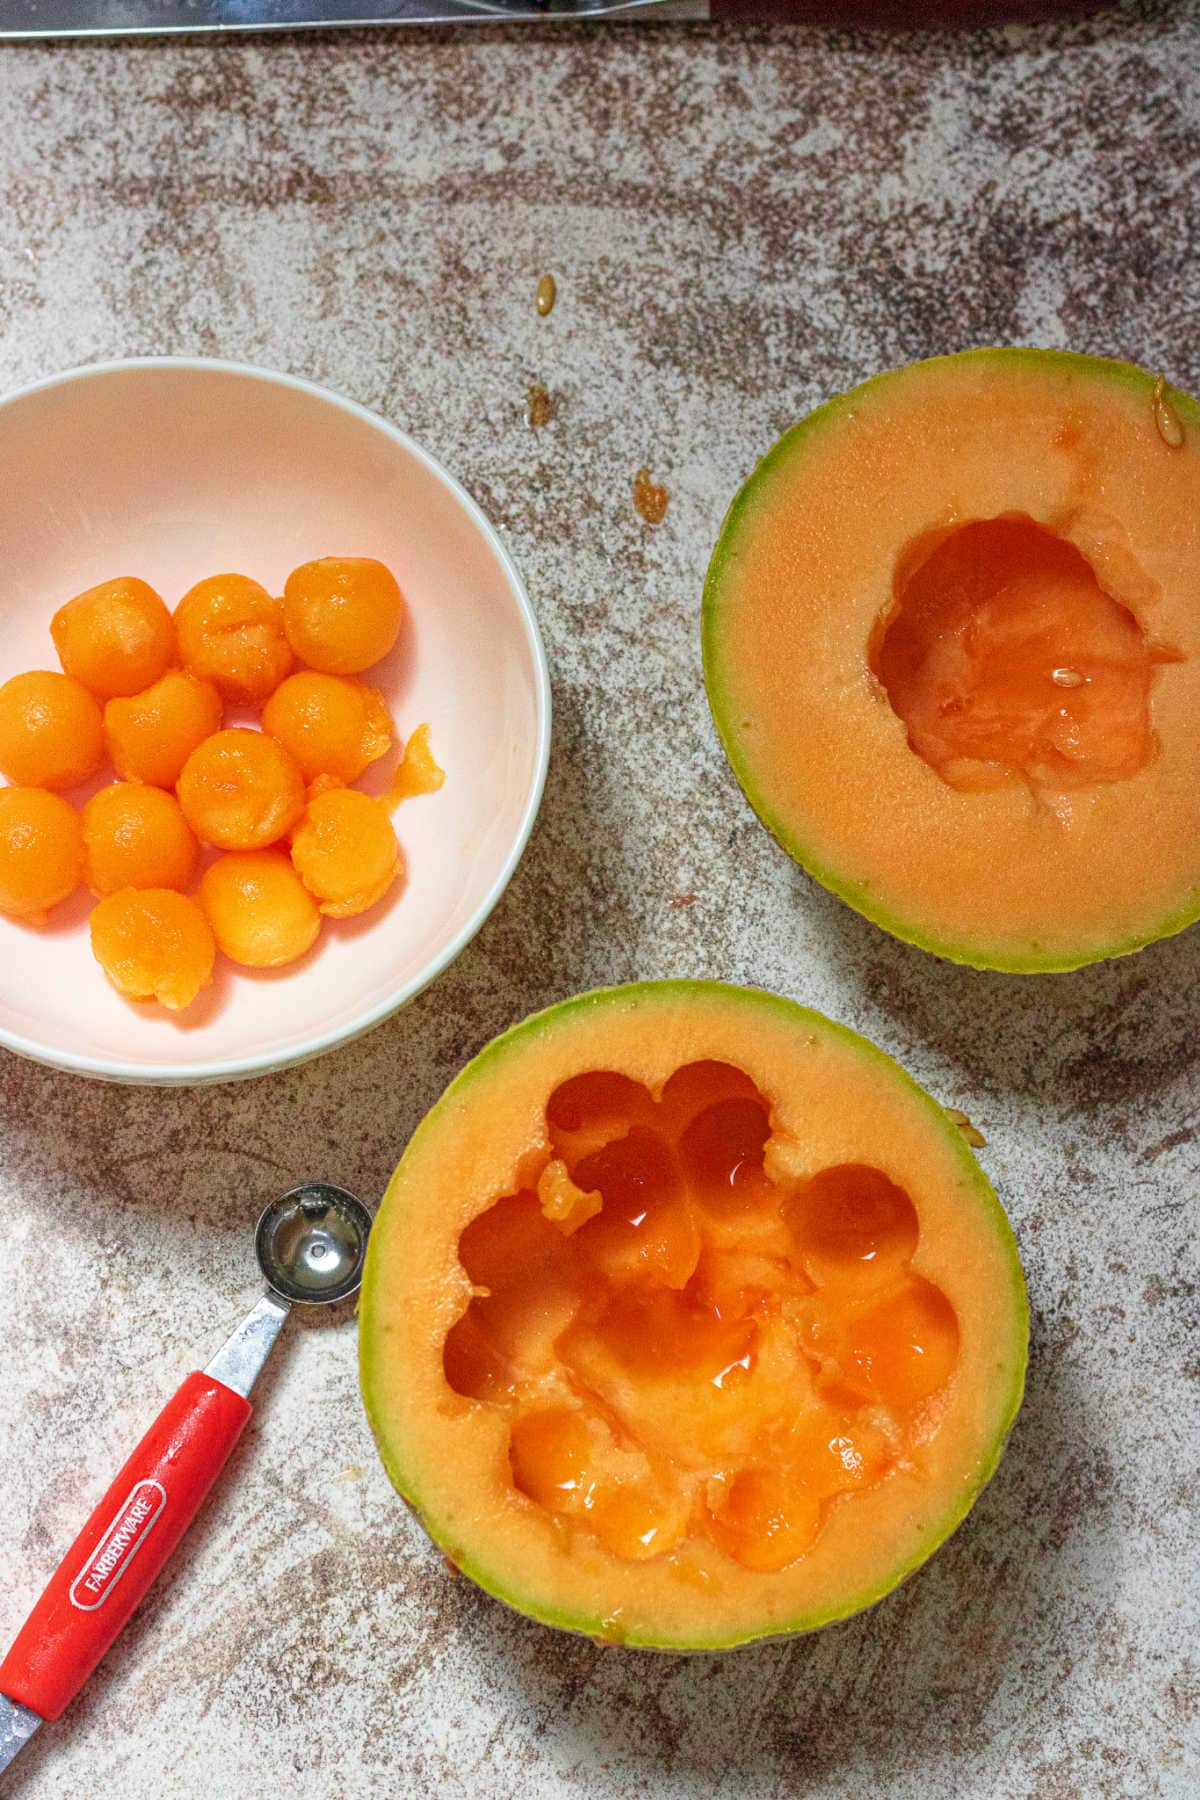 A cantaloupe being cut into melon balls.